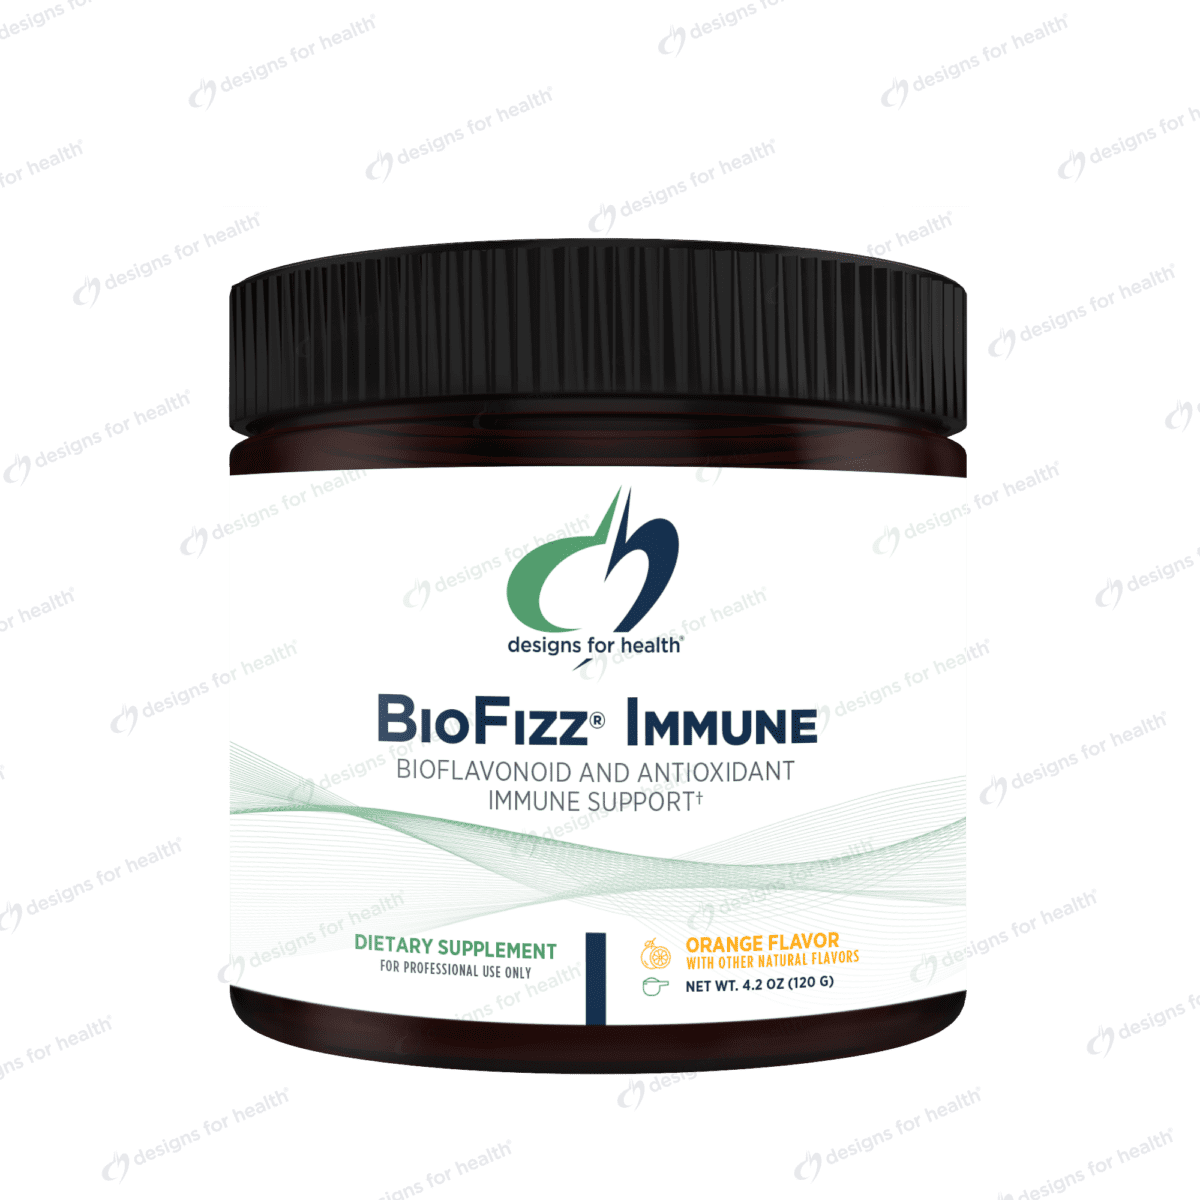 BioFizz™ Immune